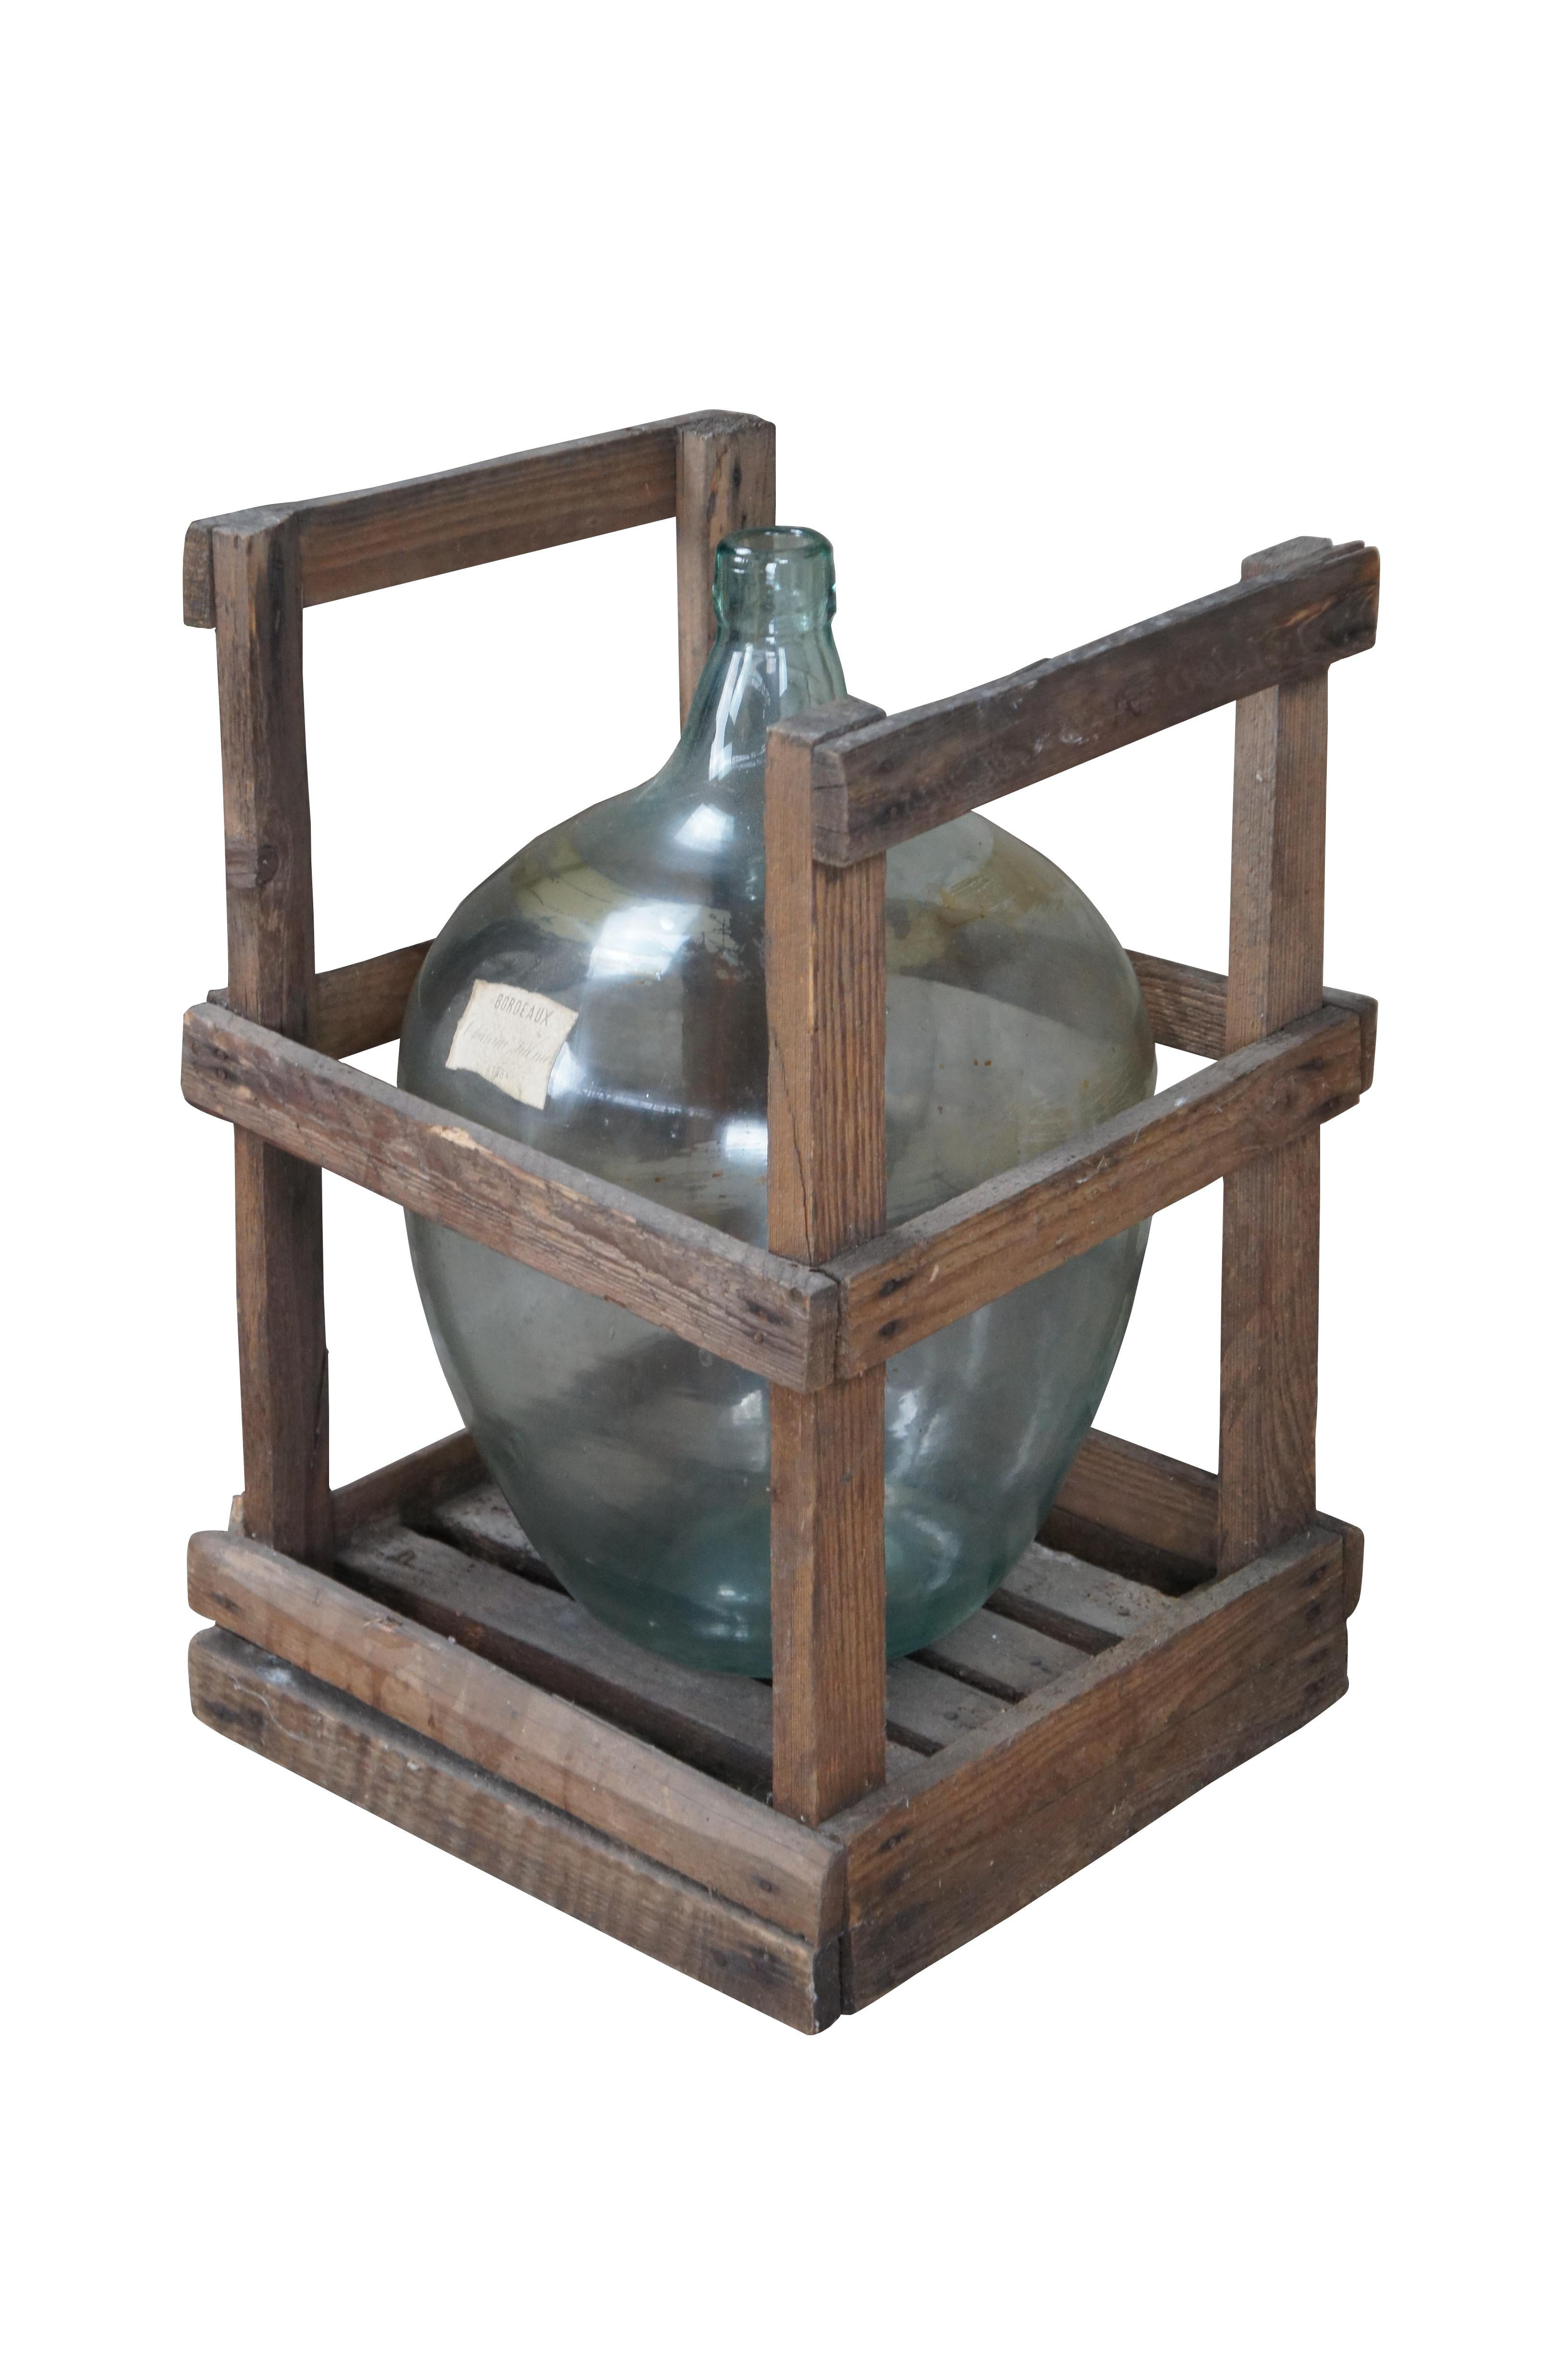 Antike französische mundgeblasene Glas Demijohn Bordeaux Weinflasche Krug & Holzkiste. Die blassgrüne Form und die Kiste sind aus Eichenholz gefertigt. Gezeichnet 1884

Abmessungen:
15